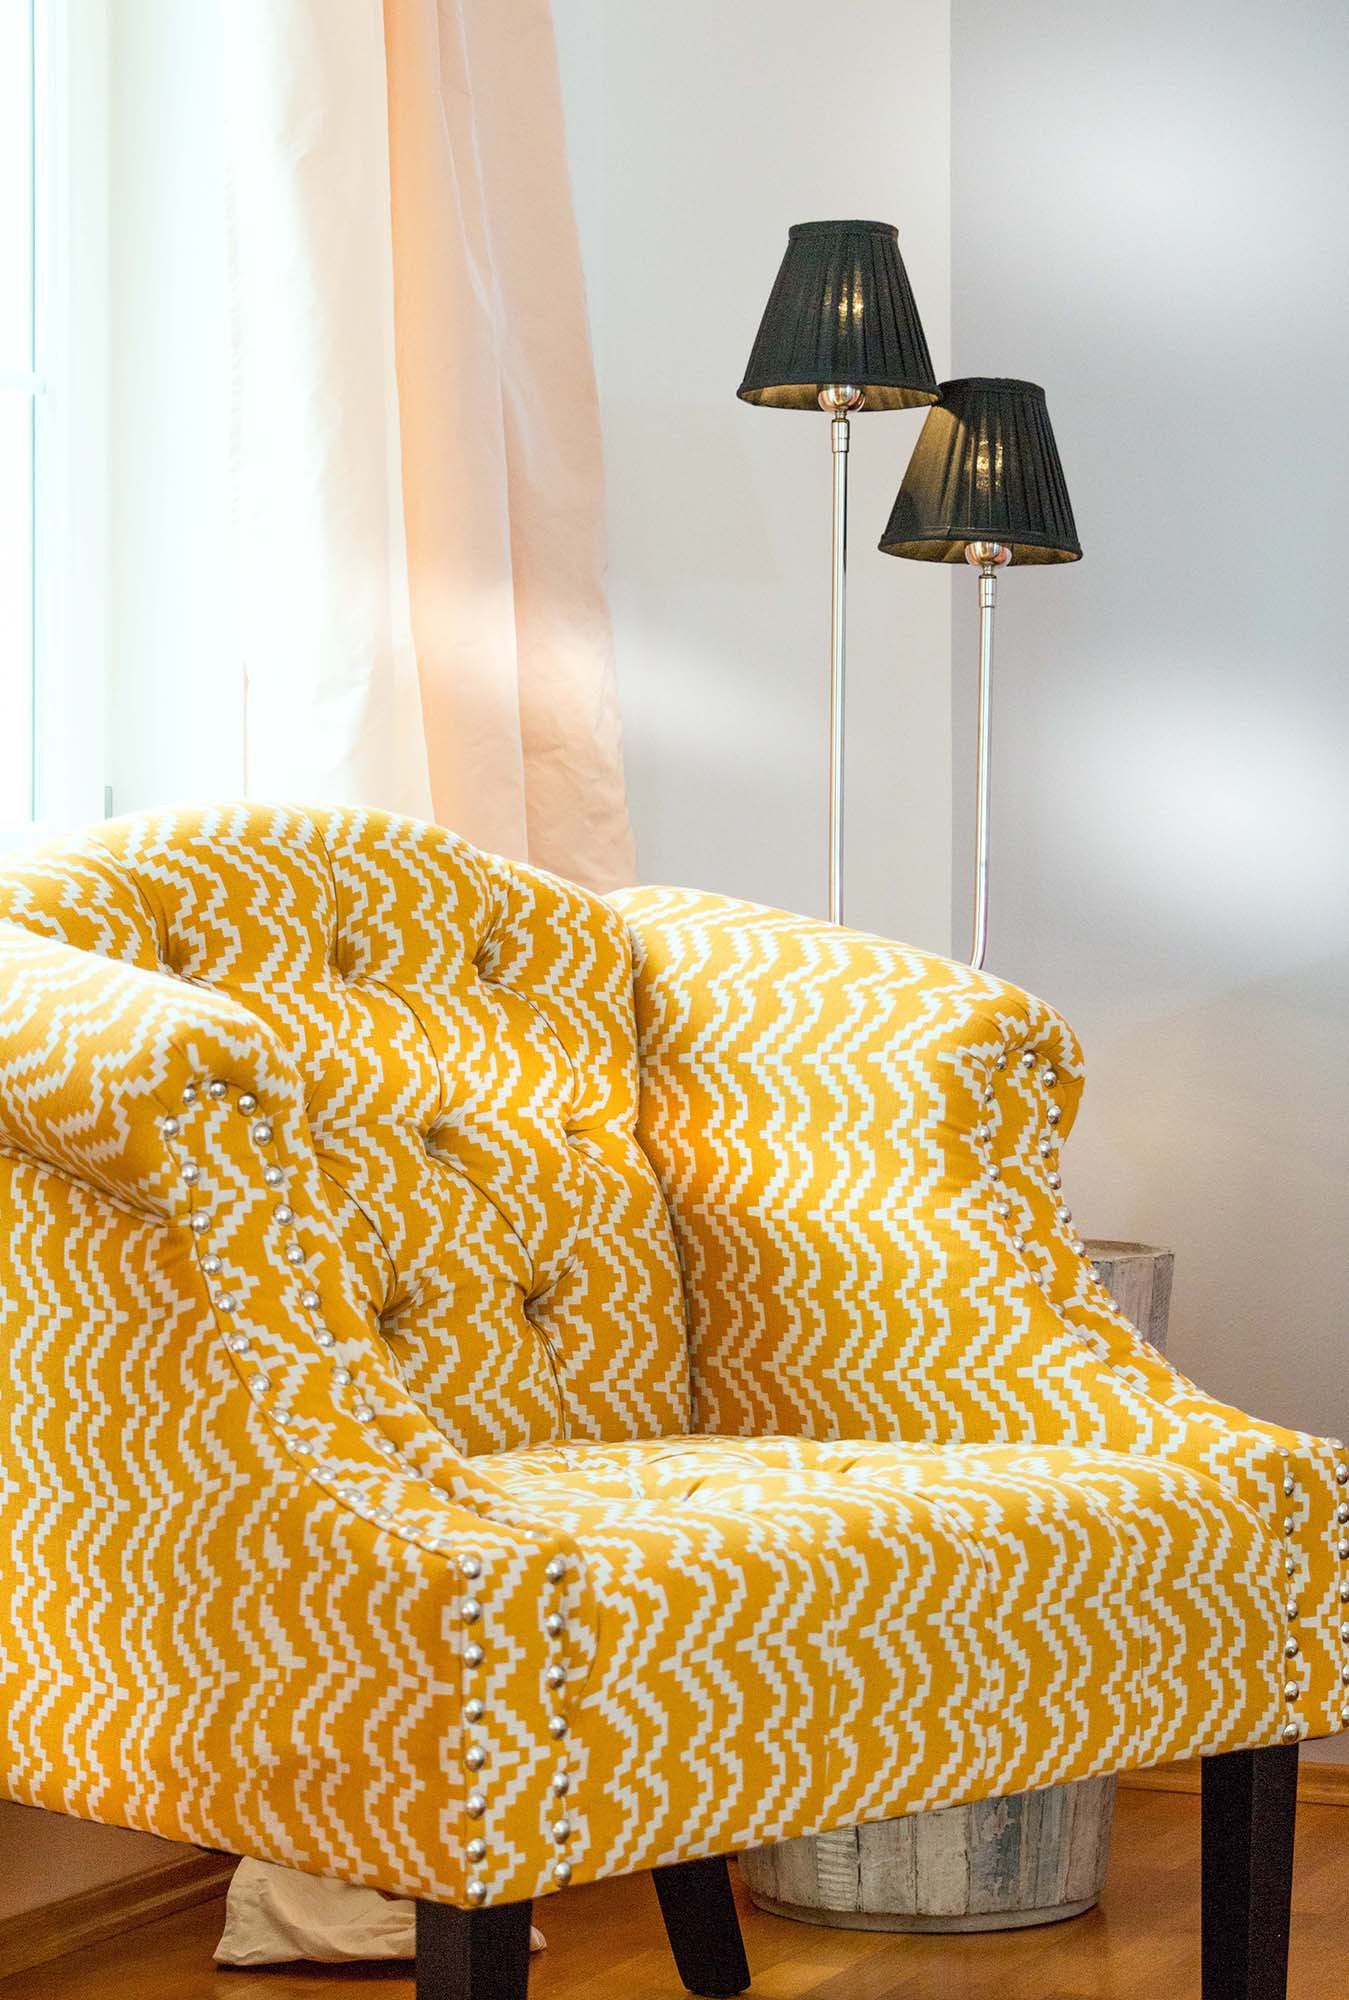 Gelb-weiß gemusterter Sessel mit Designlampe.